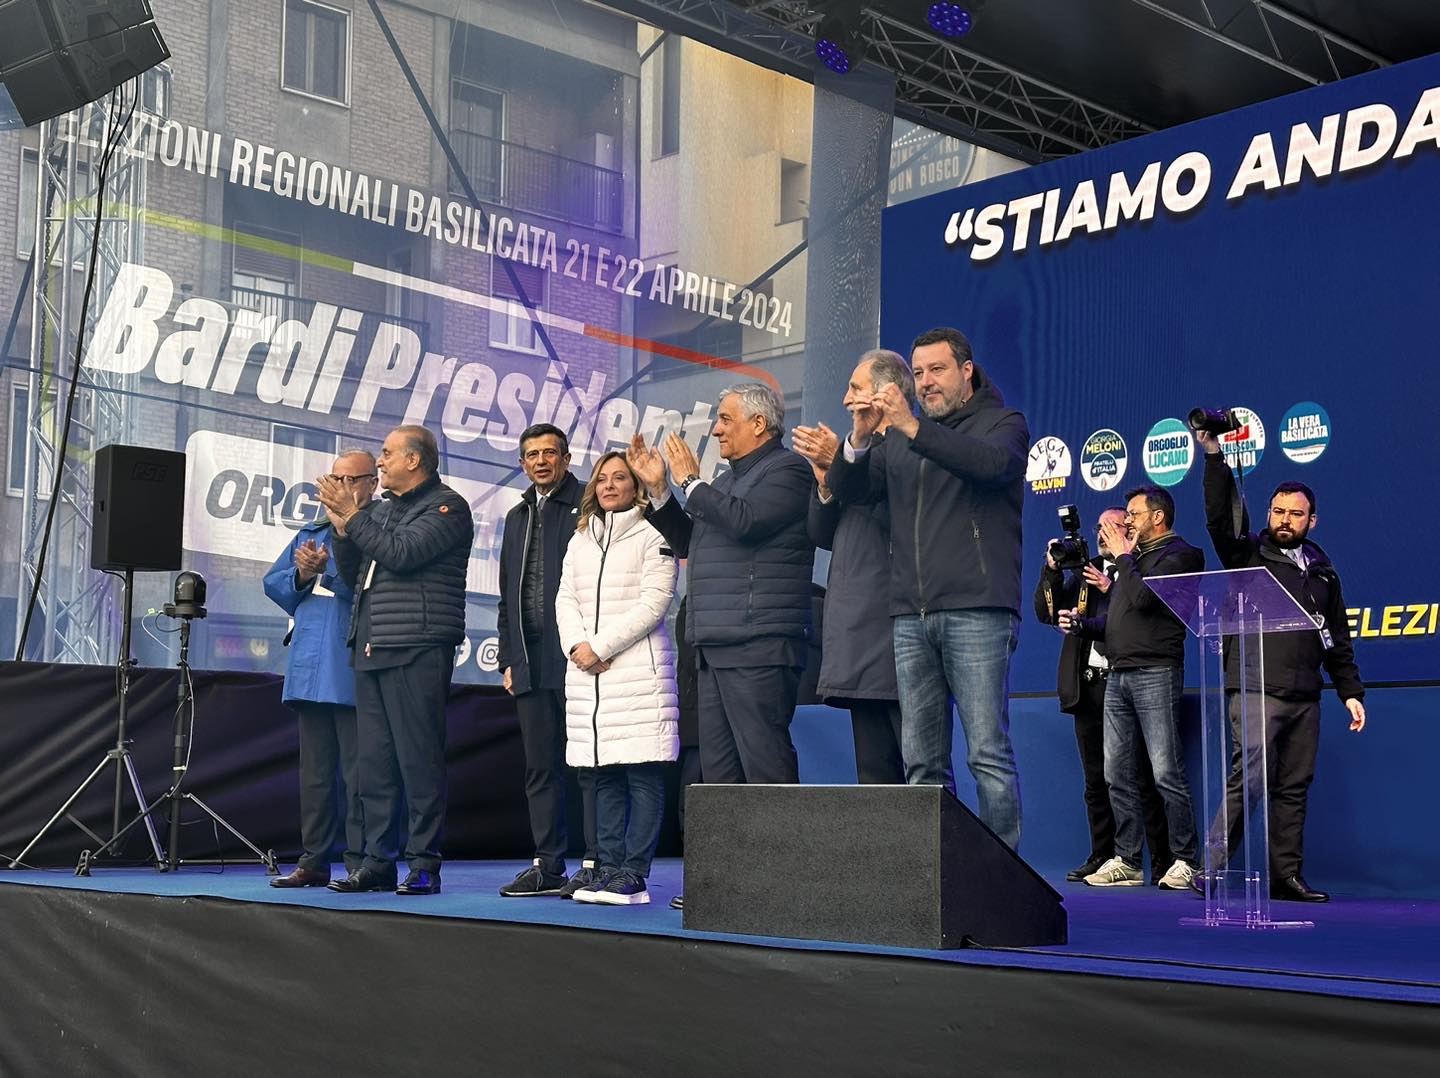 Regionali Basilicata, i leader del centrodestra riuniti a Potenza. Tajani: «Berlusconi sta guardando il comizio da lassù»